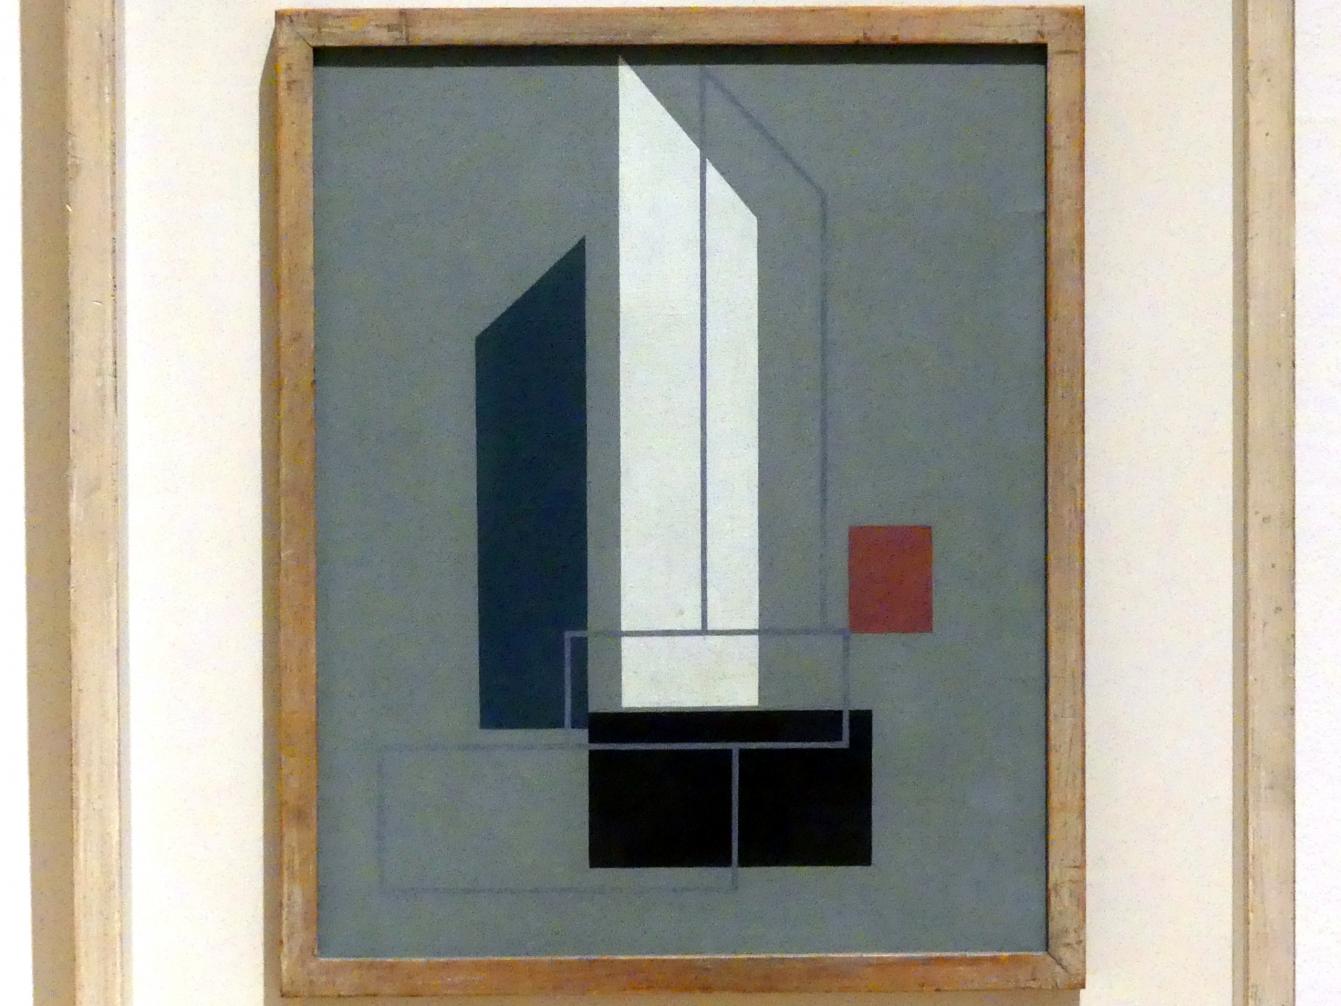 John Cecil Stephenson (1937), Painting II, Edinburgh, Scottish National Gallery of Modern Art, Gebäude One, Saal 17 - Abstrakte Kunst und Britannien in der Zwischenkriegszeit, 1937